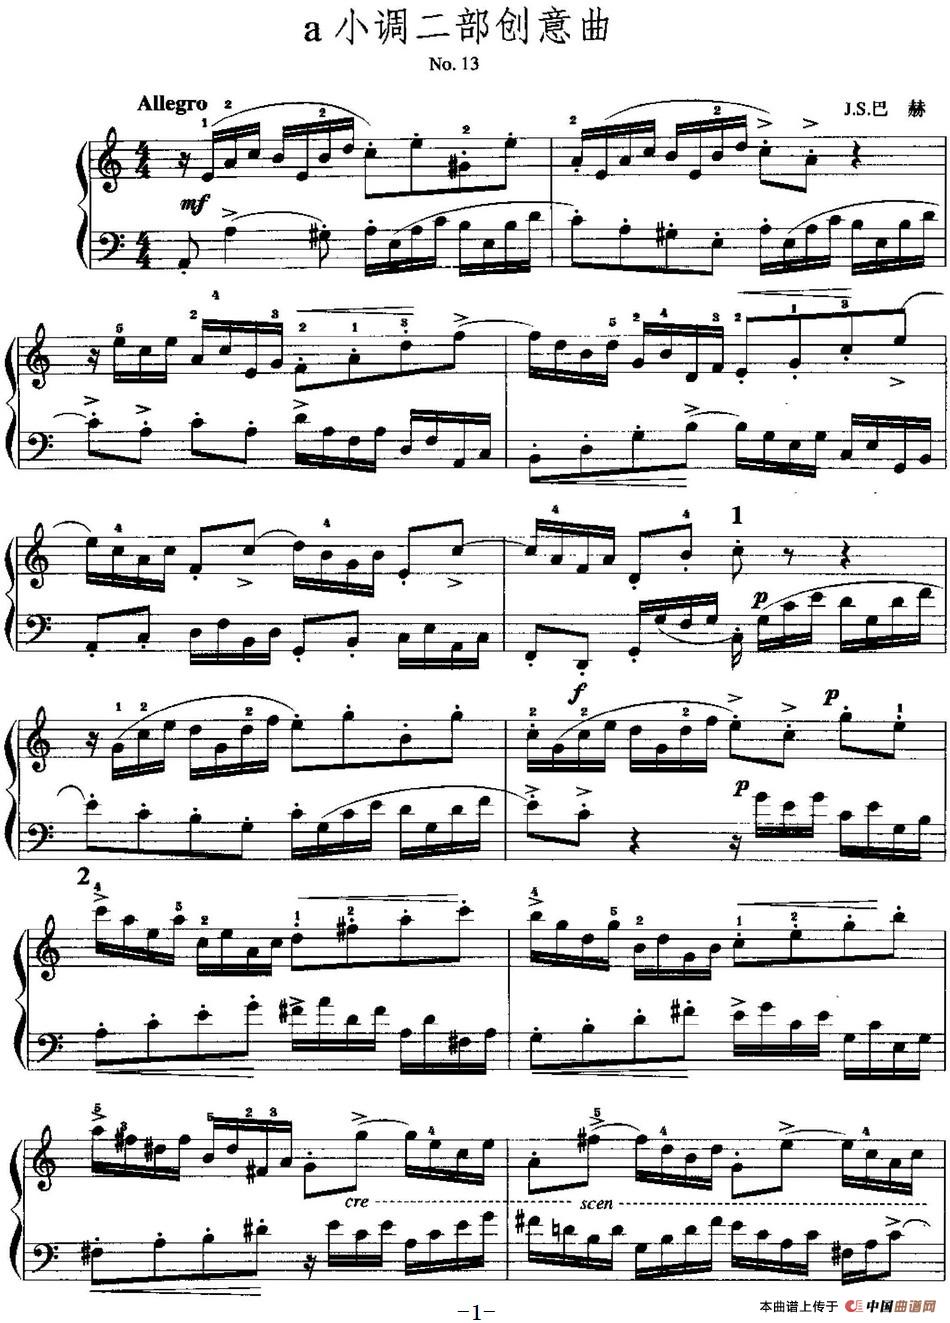 手风琴复调作品：a小调二部创意曲手风琴谱（线简谱对照、带指法版）